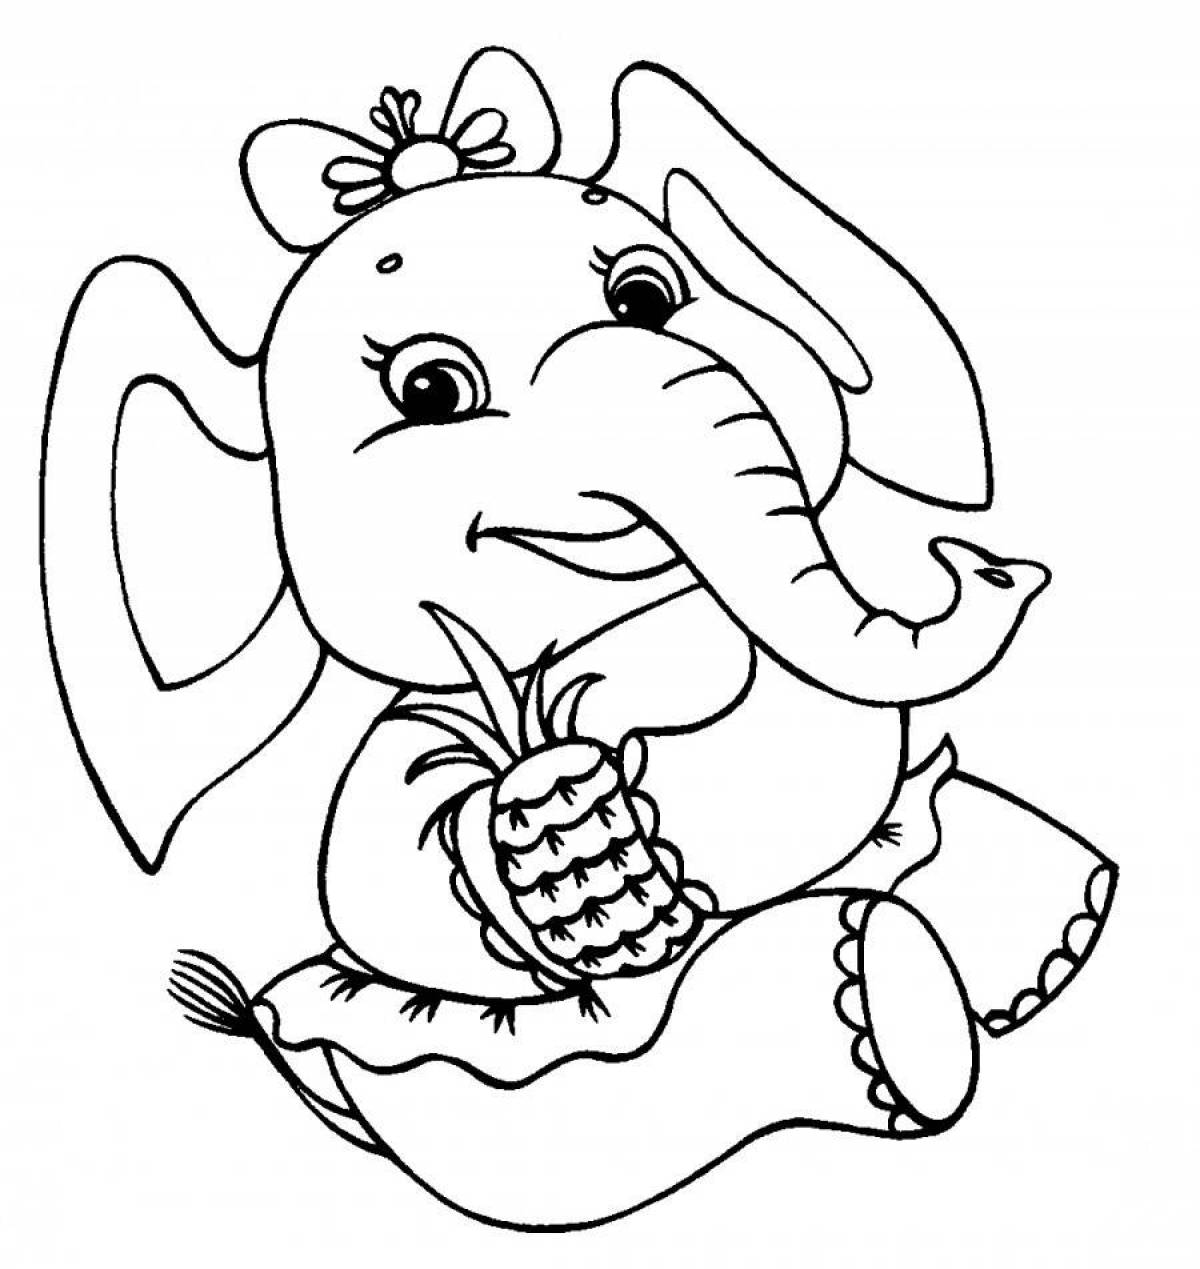 Раскраска слон для детей